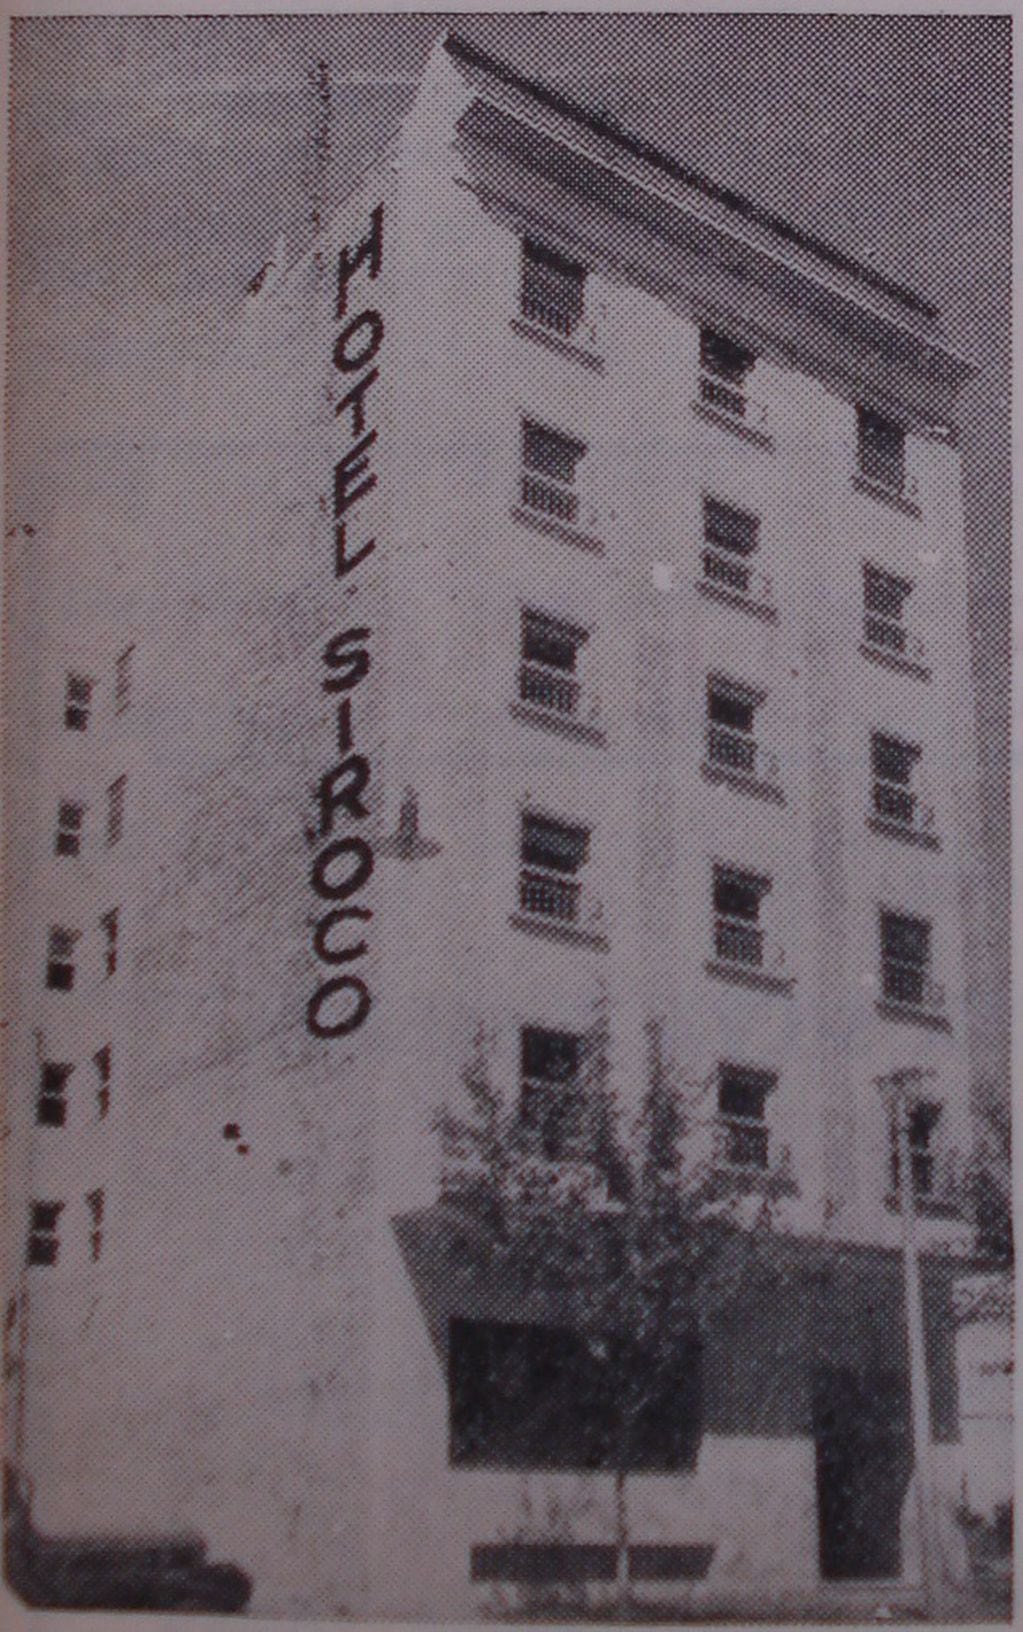 Hotel Siroco, hoy Ariosto.                               